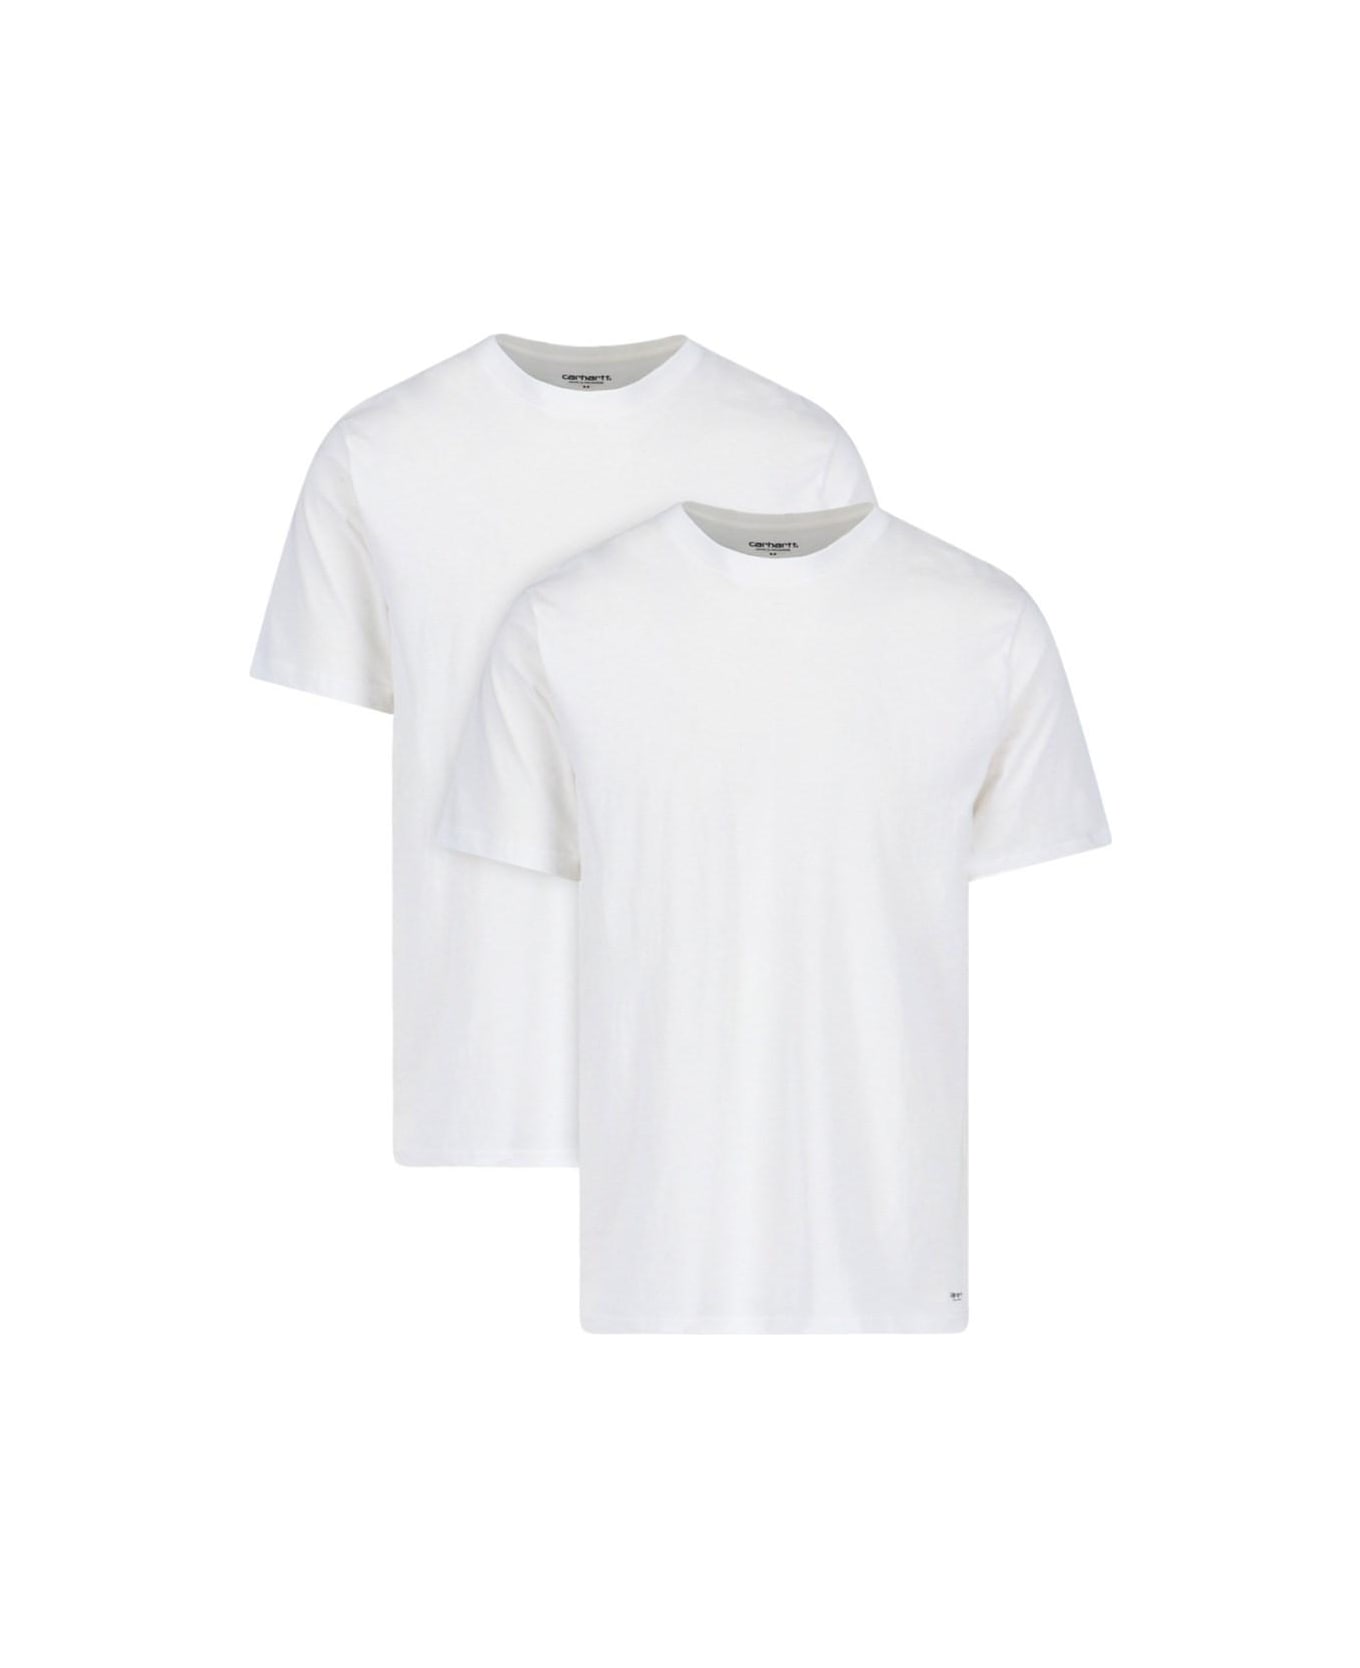 Carhartt WIP '2-pack' T-shirt Set - White